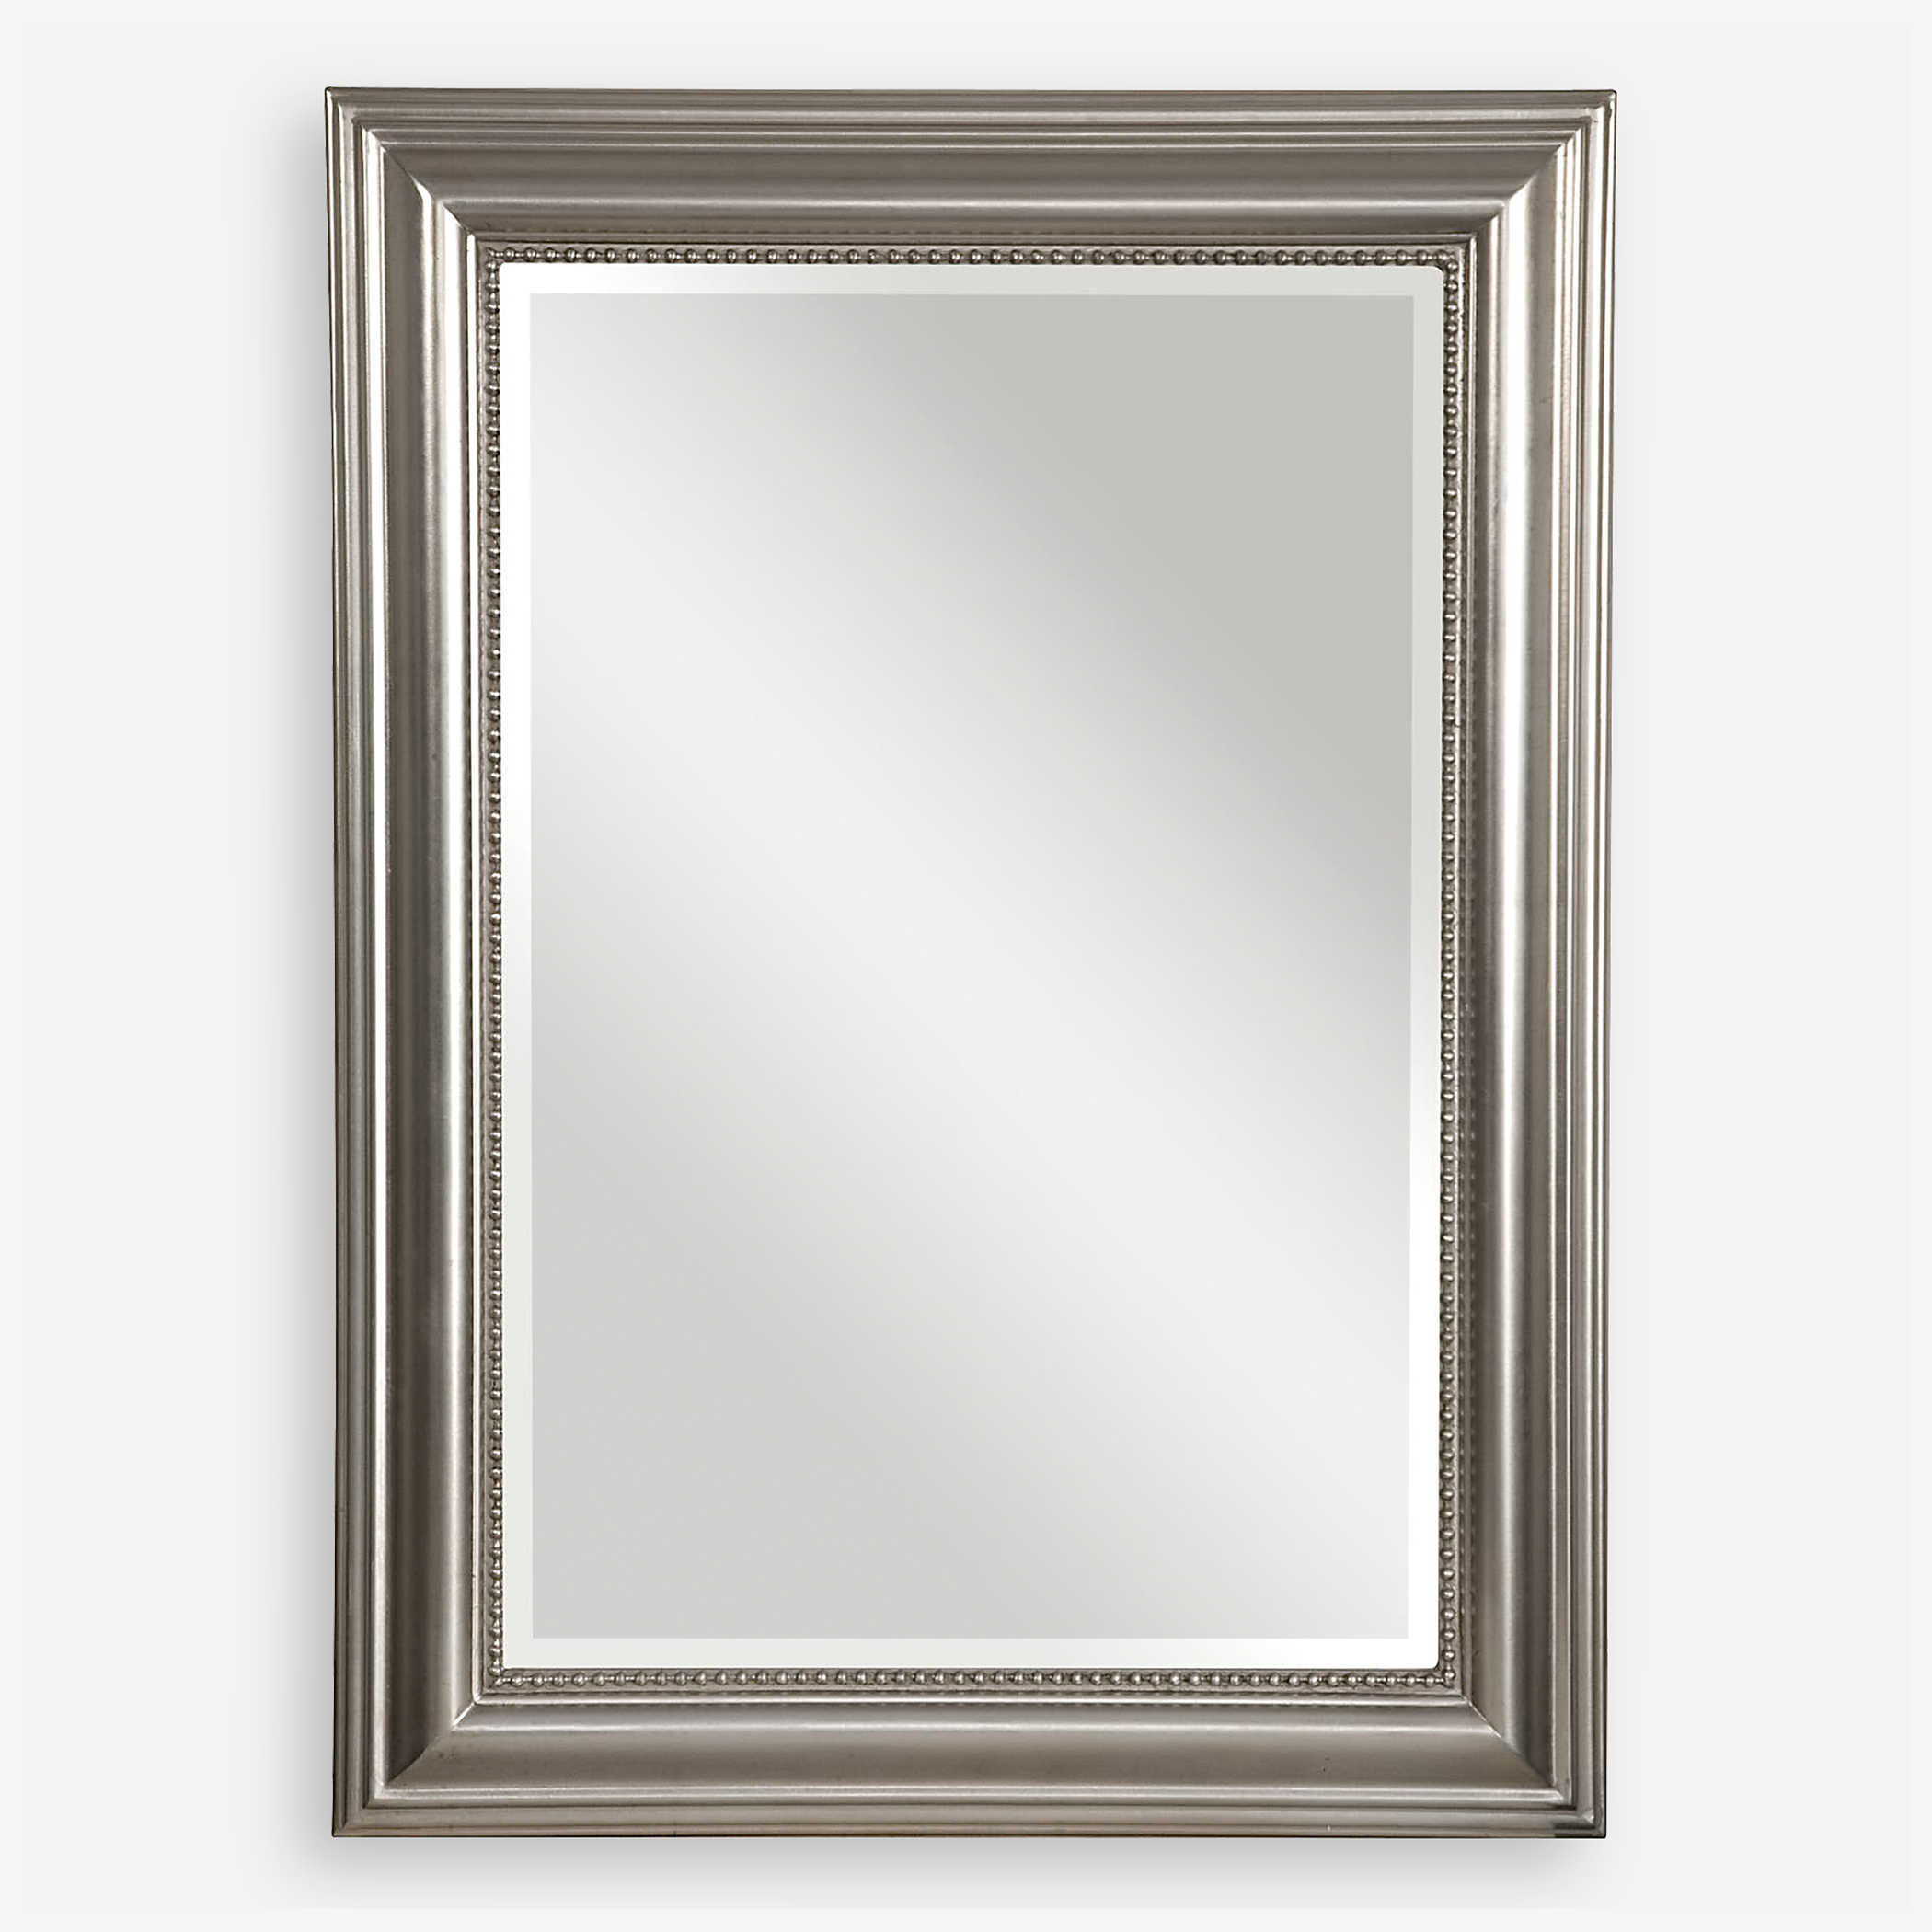 Stuart Silver Mirror Uttermost, Uttermost Elara Antiqued Silver Wall Mirror